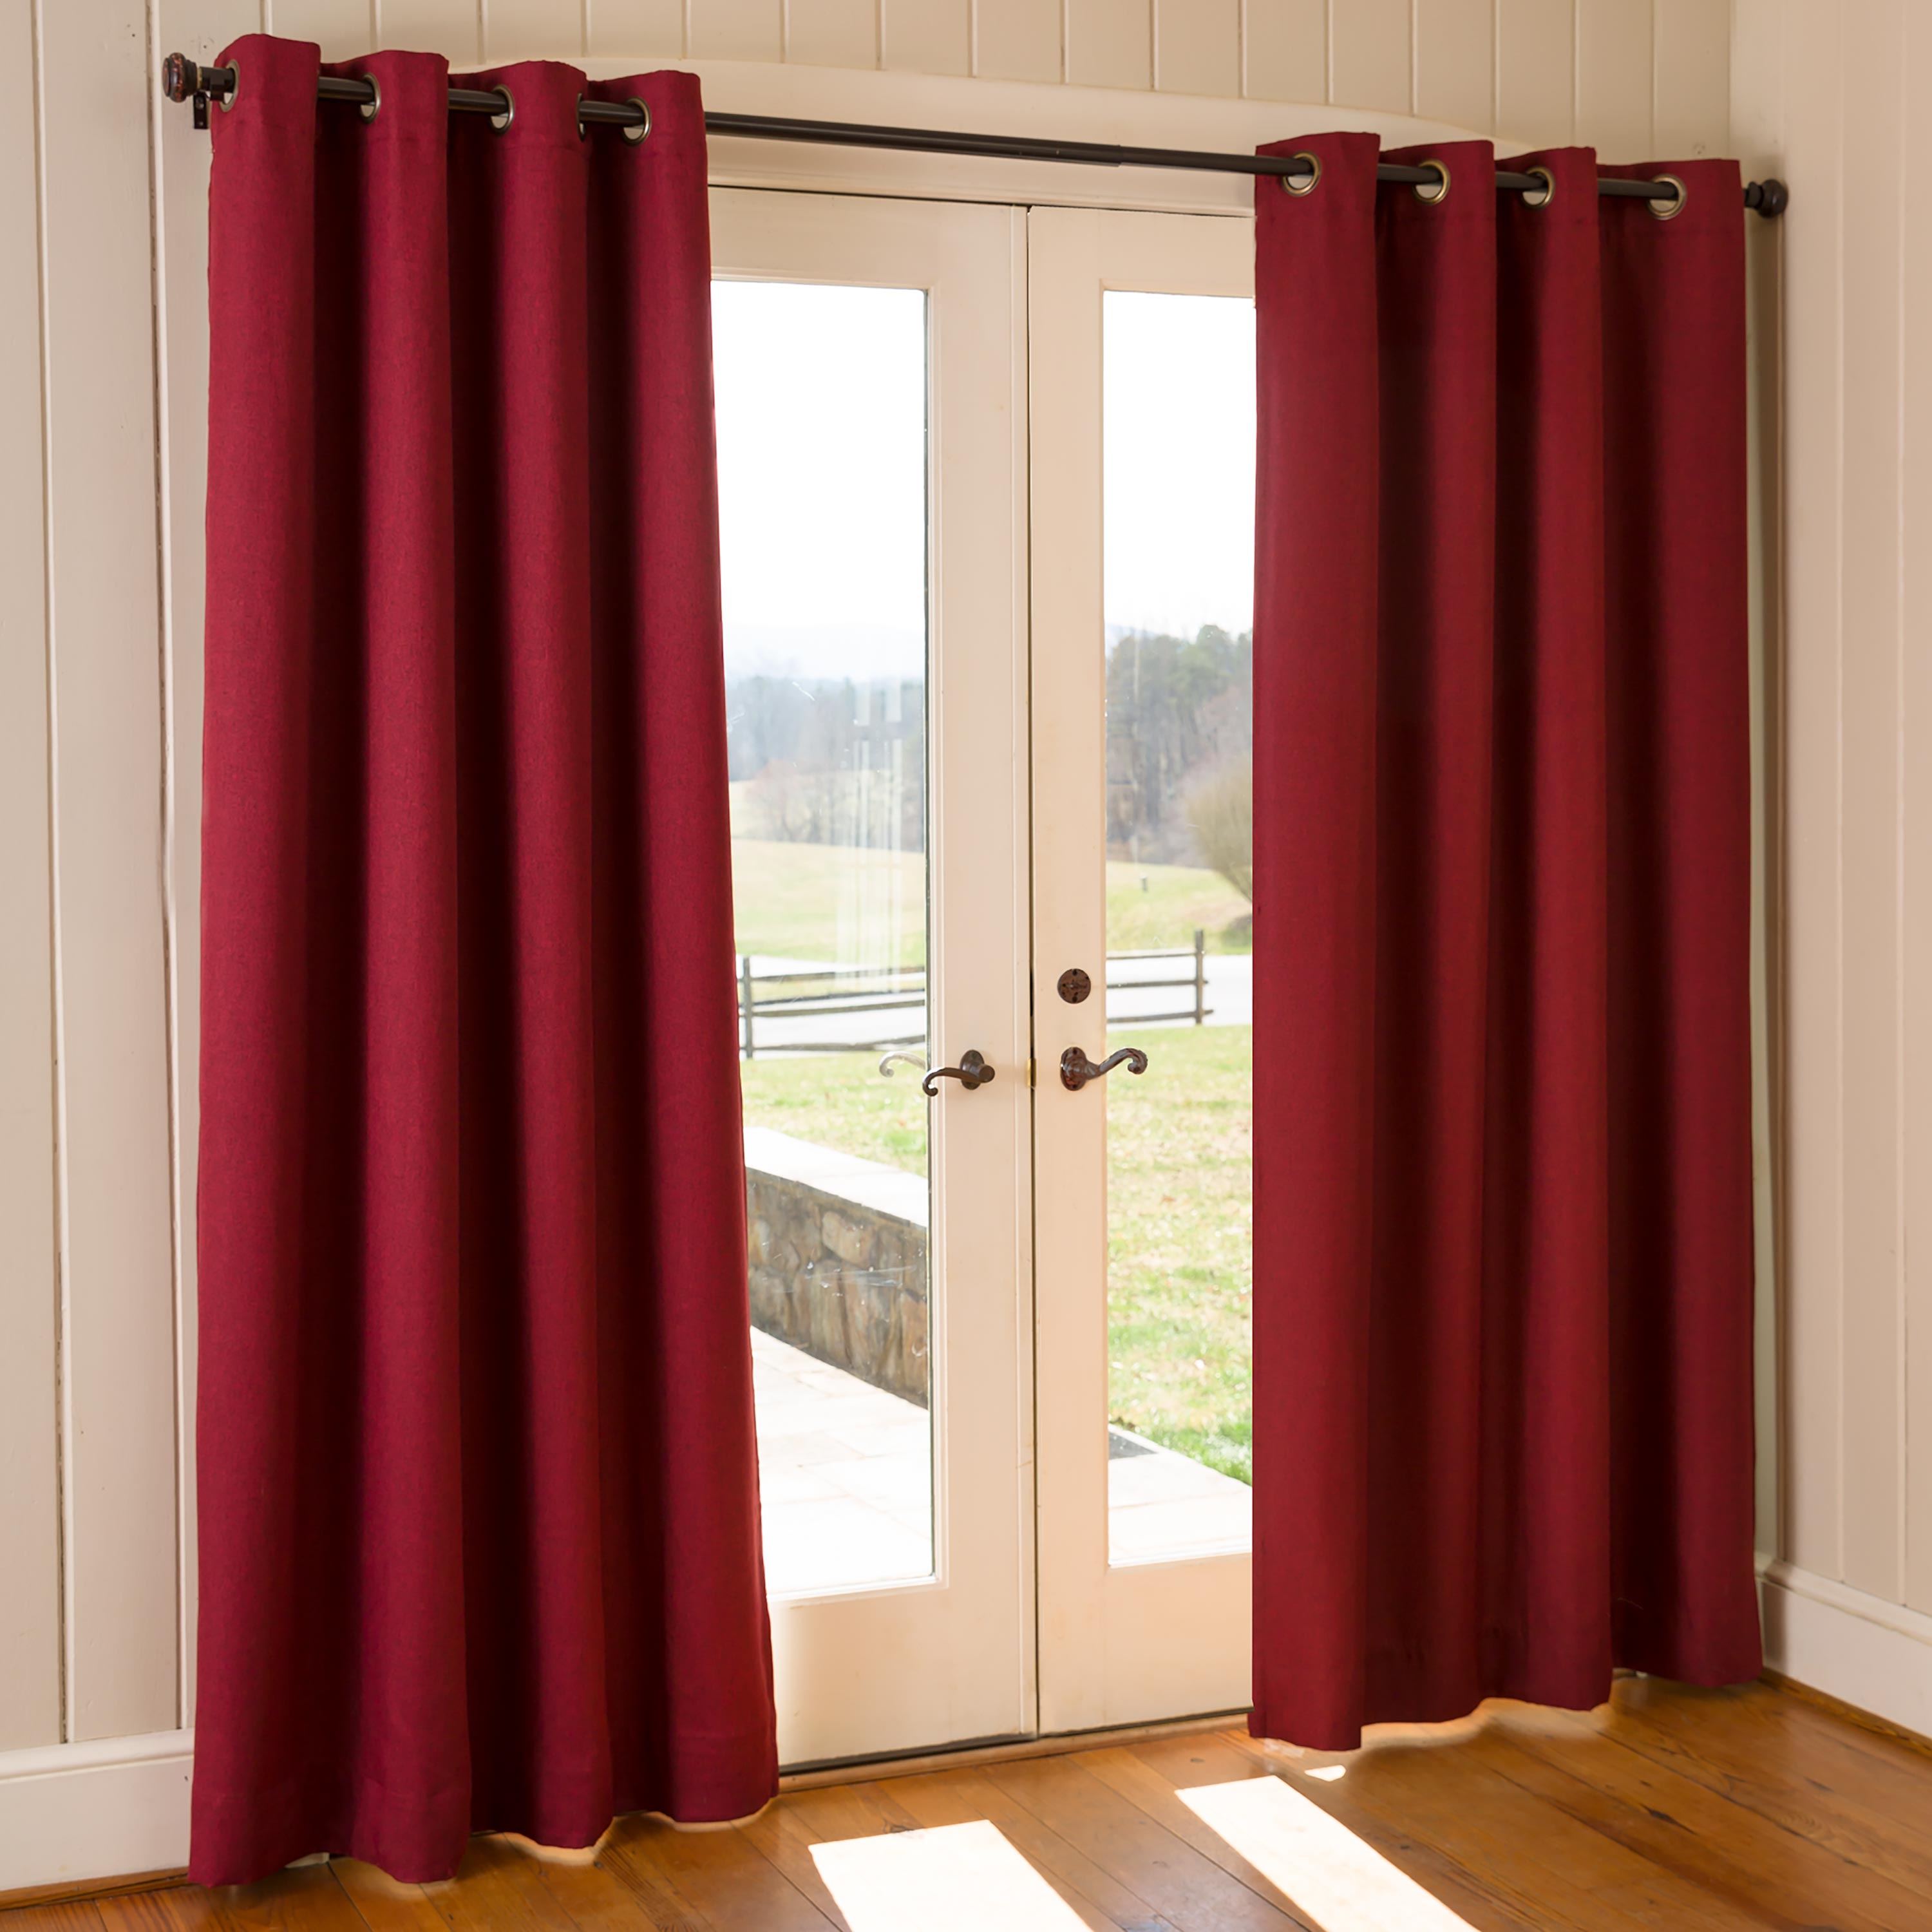 Madison Double-Blackout Grommet Curtain Pair, 40"W x 84"L per panel